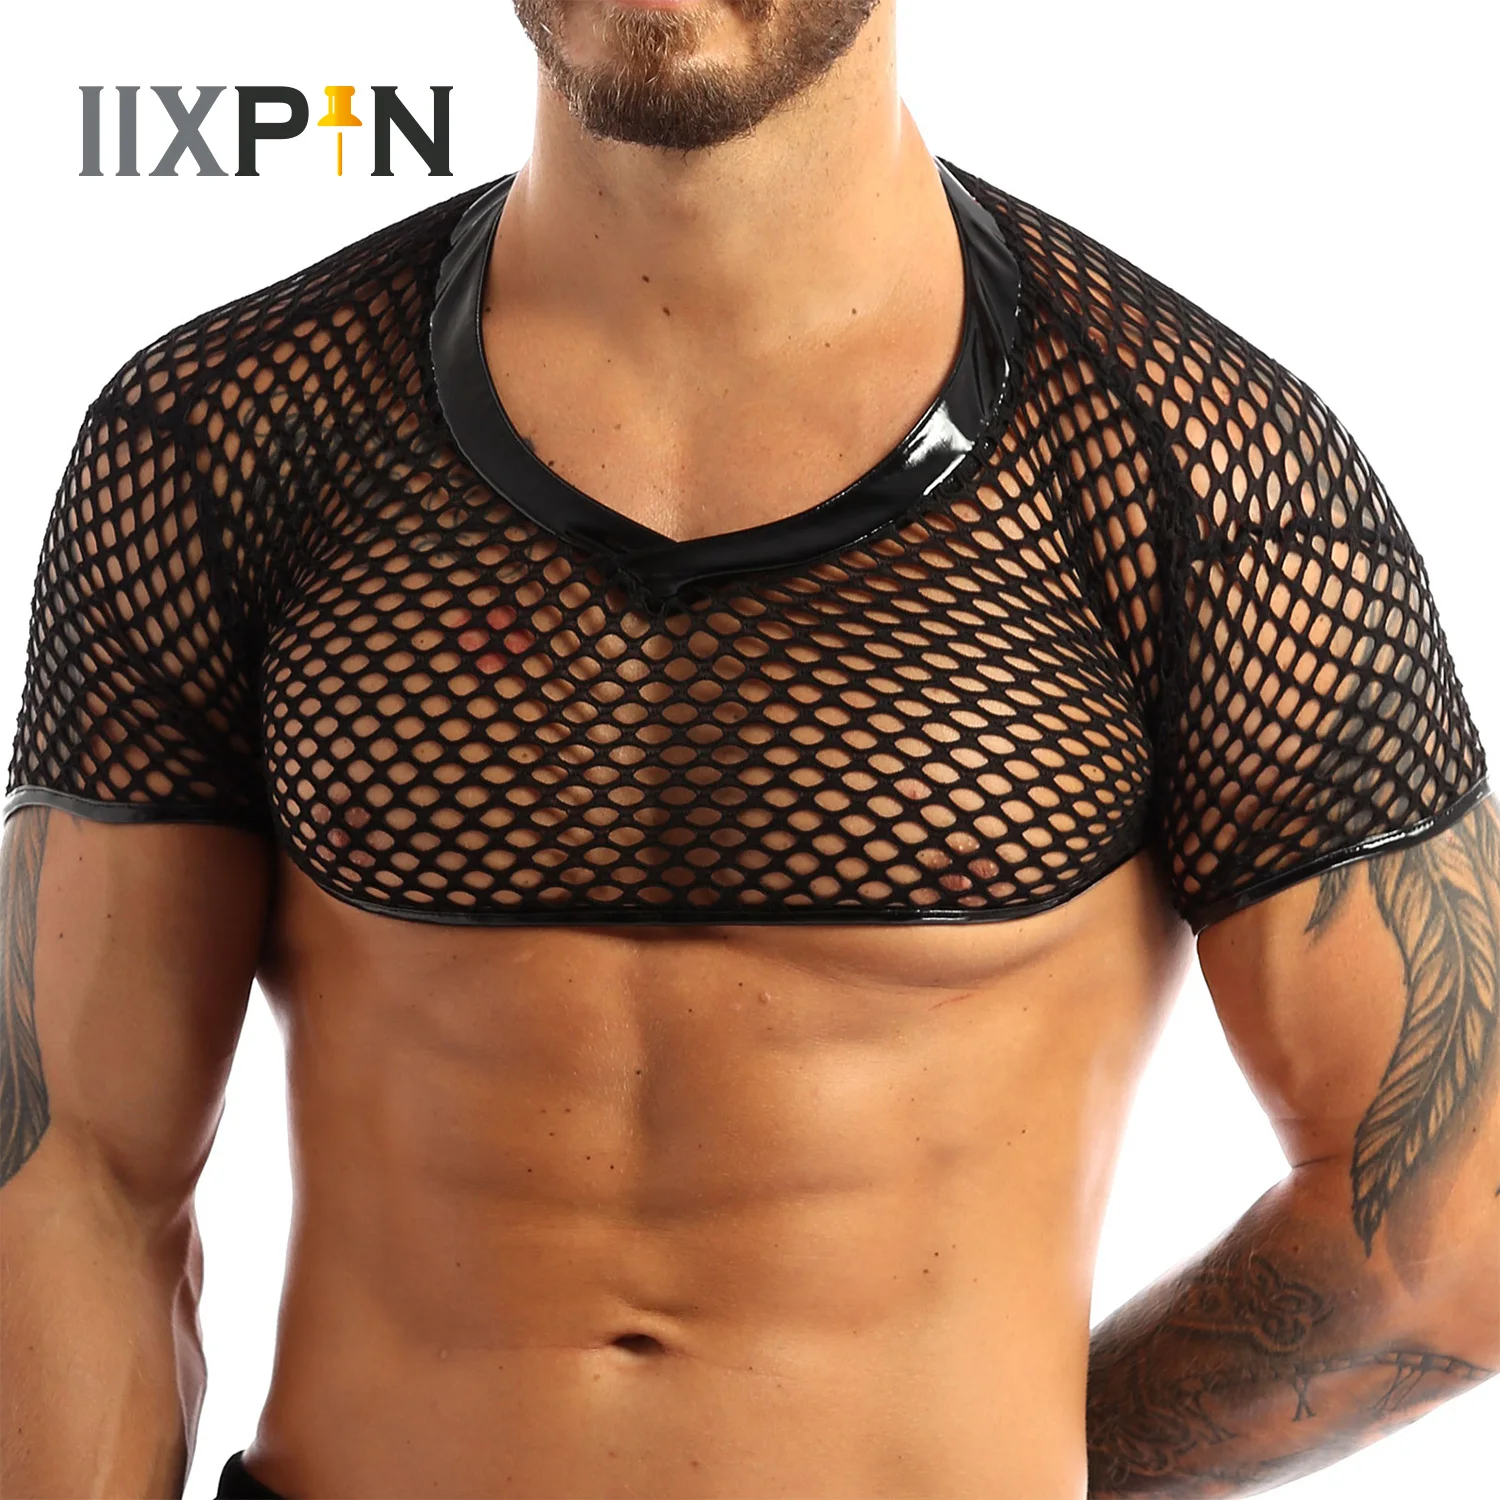 

Mens Erotic Lingerie Muscle Crop Top V-neckline Hem Trimmed in Faux Patent Leather Vest Short Sleeve Fishnet Mesh Tank Top